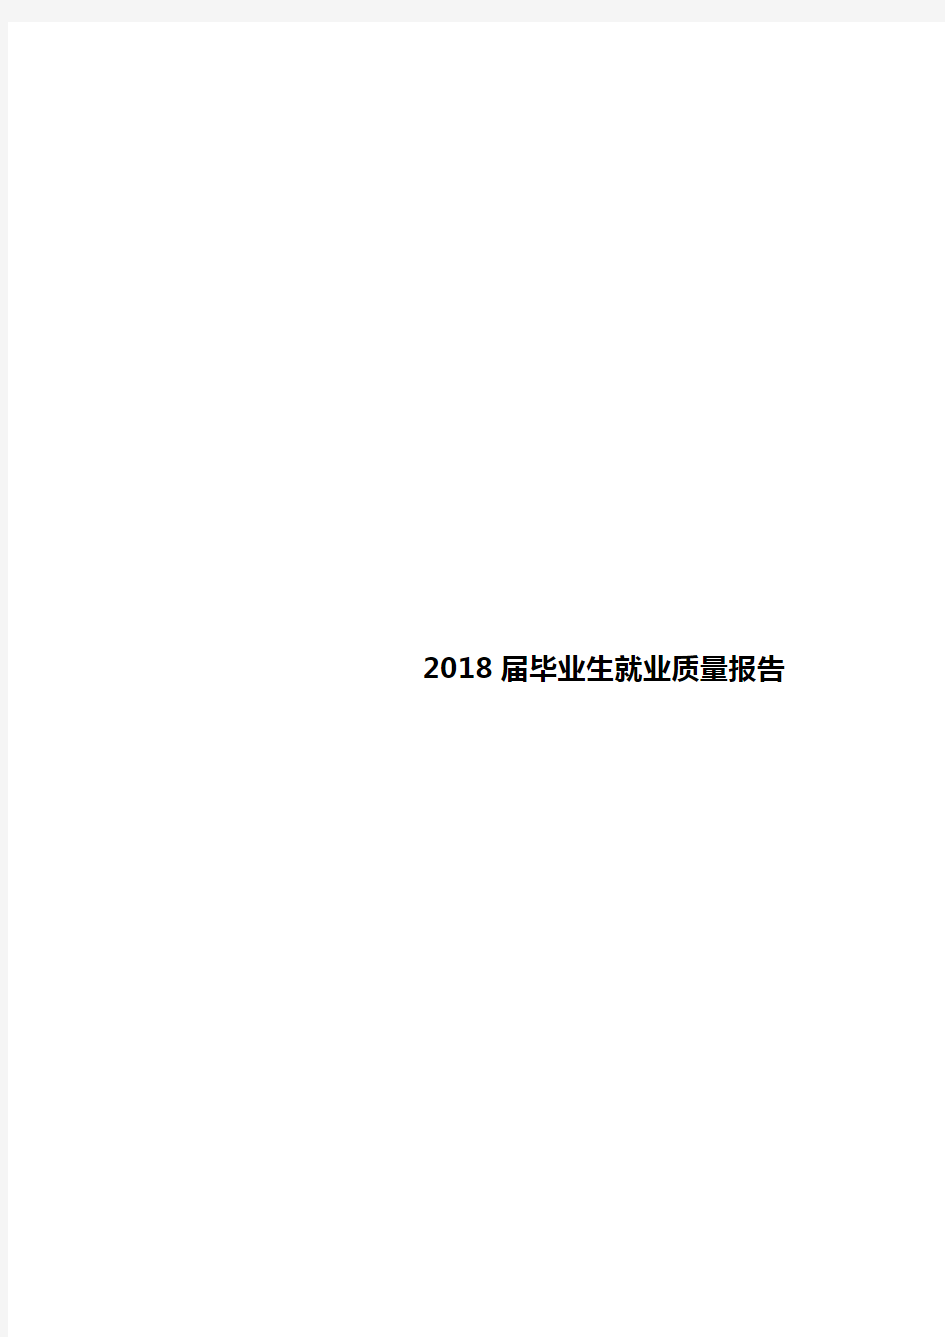 2018届毕业生就业质量报告【模板】